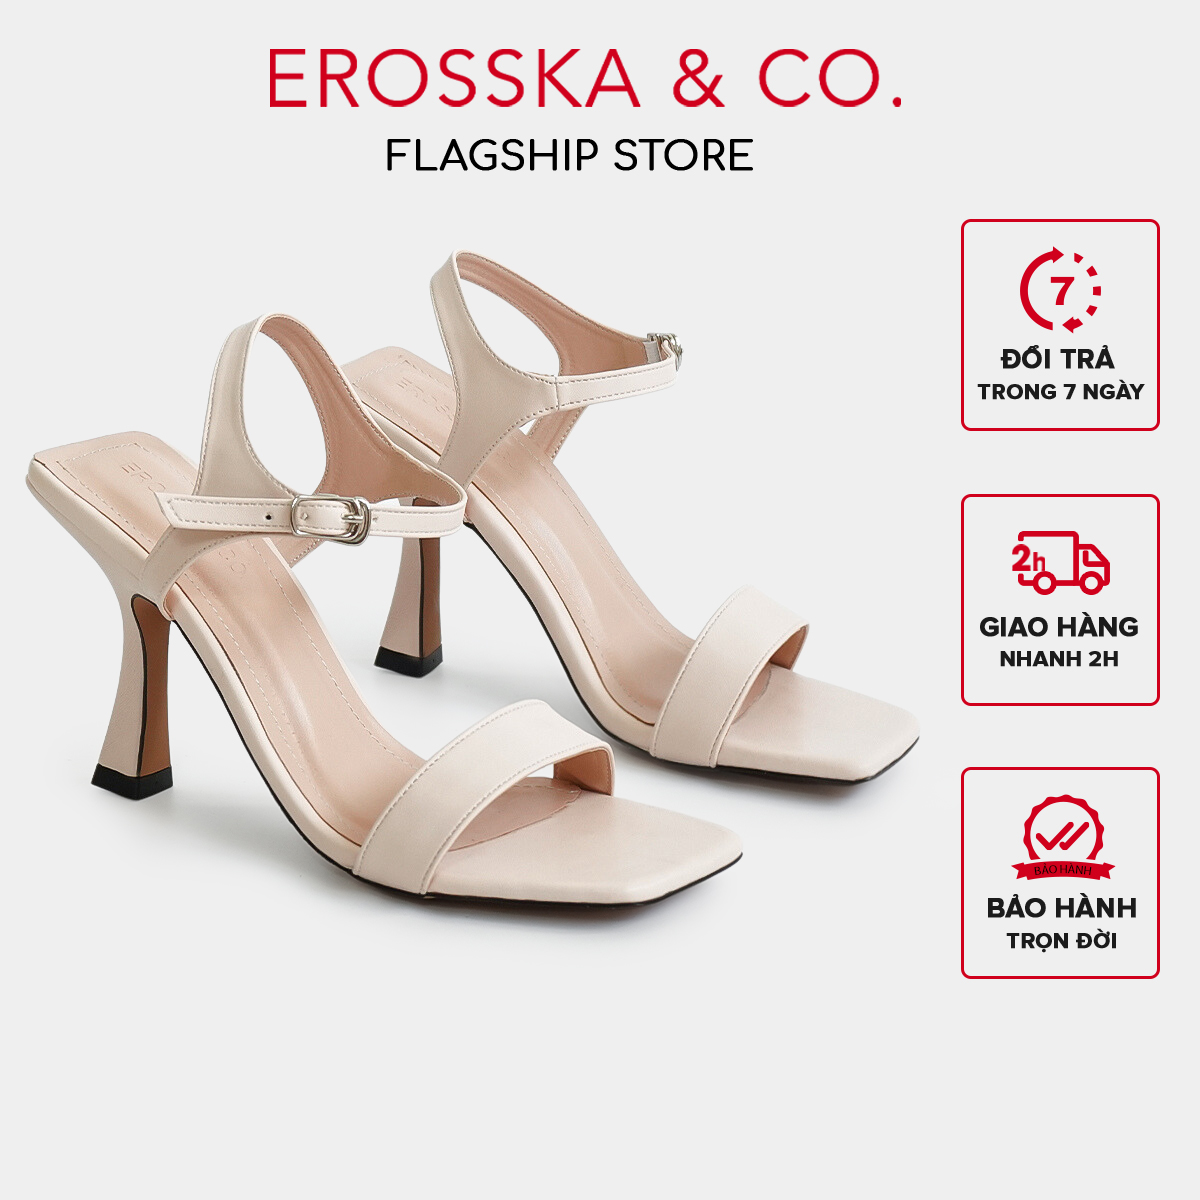 [Form nhỏ tăng 1 size] Erosska - Giày sandal cao gót nữ mũi vuông quai mảnh cao 9cm màu nude - EB058